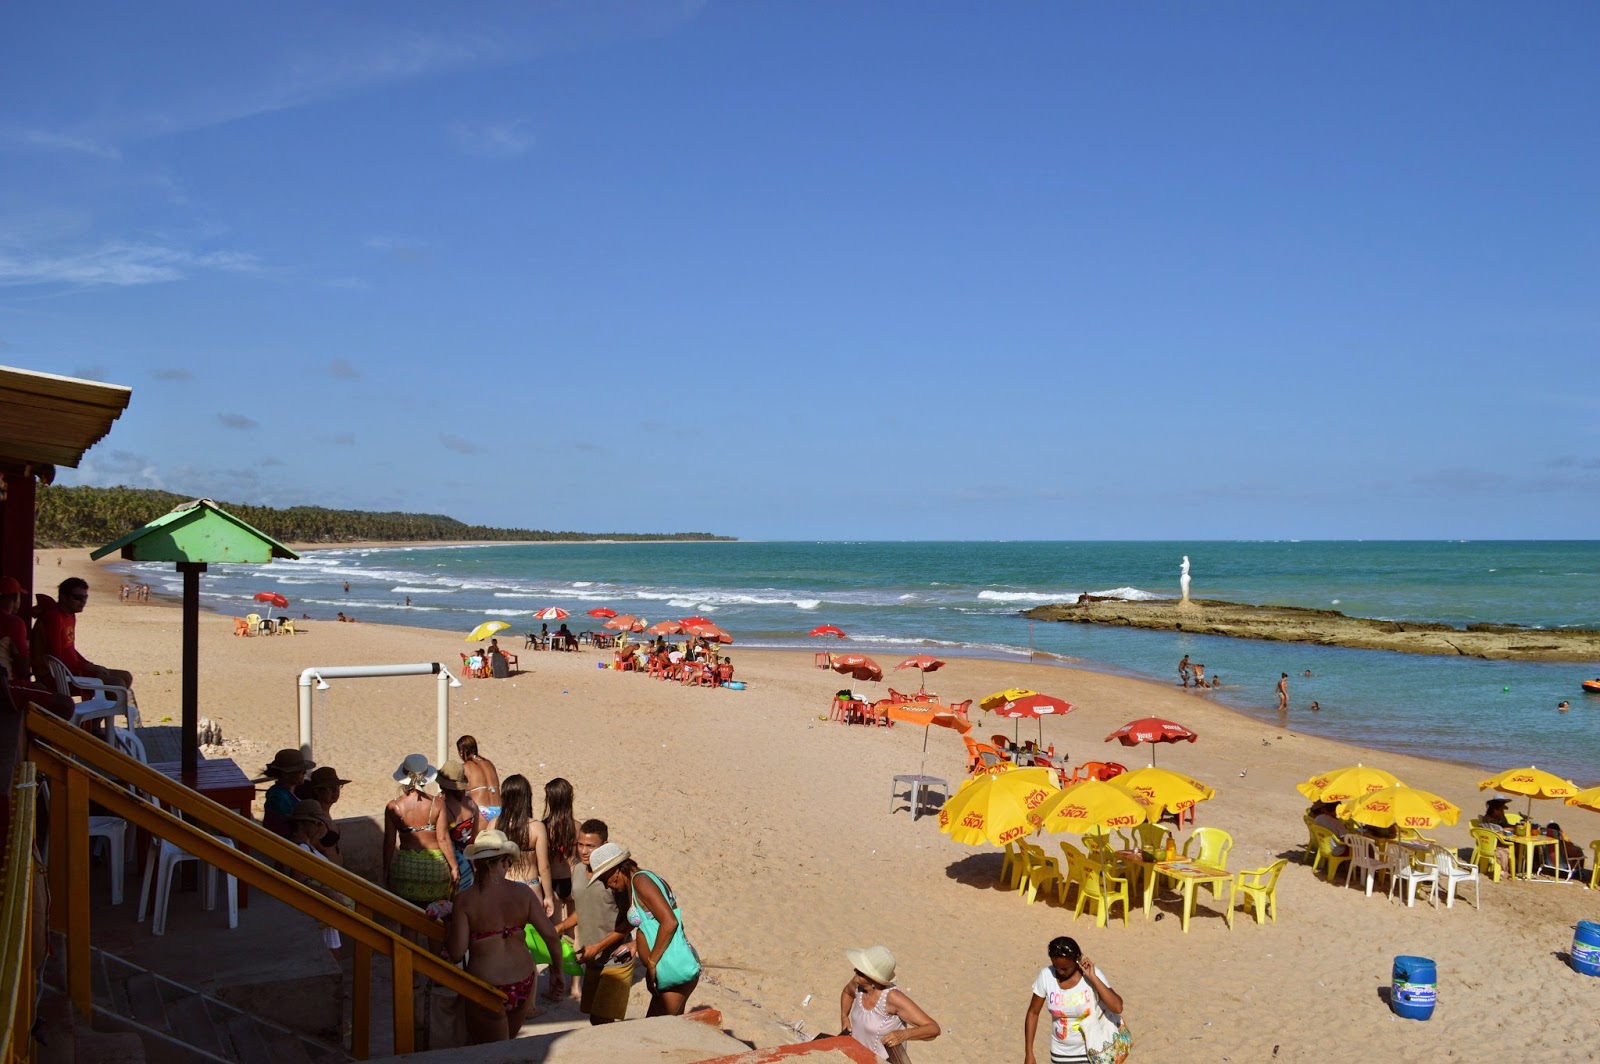 Praia da Sereia'in fotoğrafı parlak kum yüzey ile